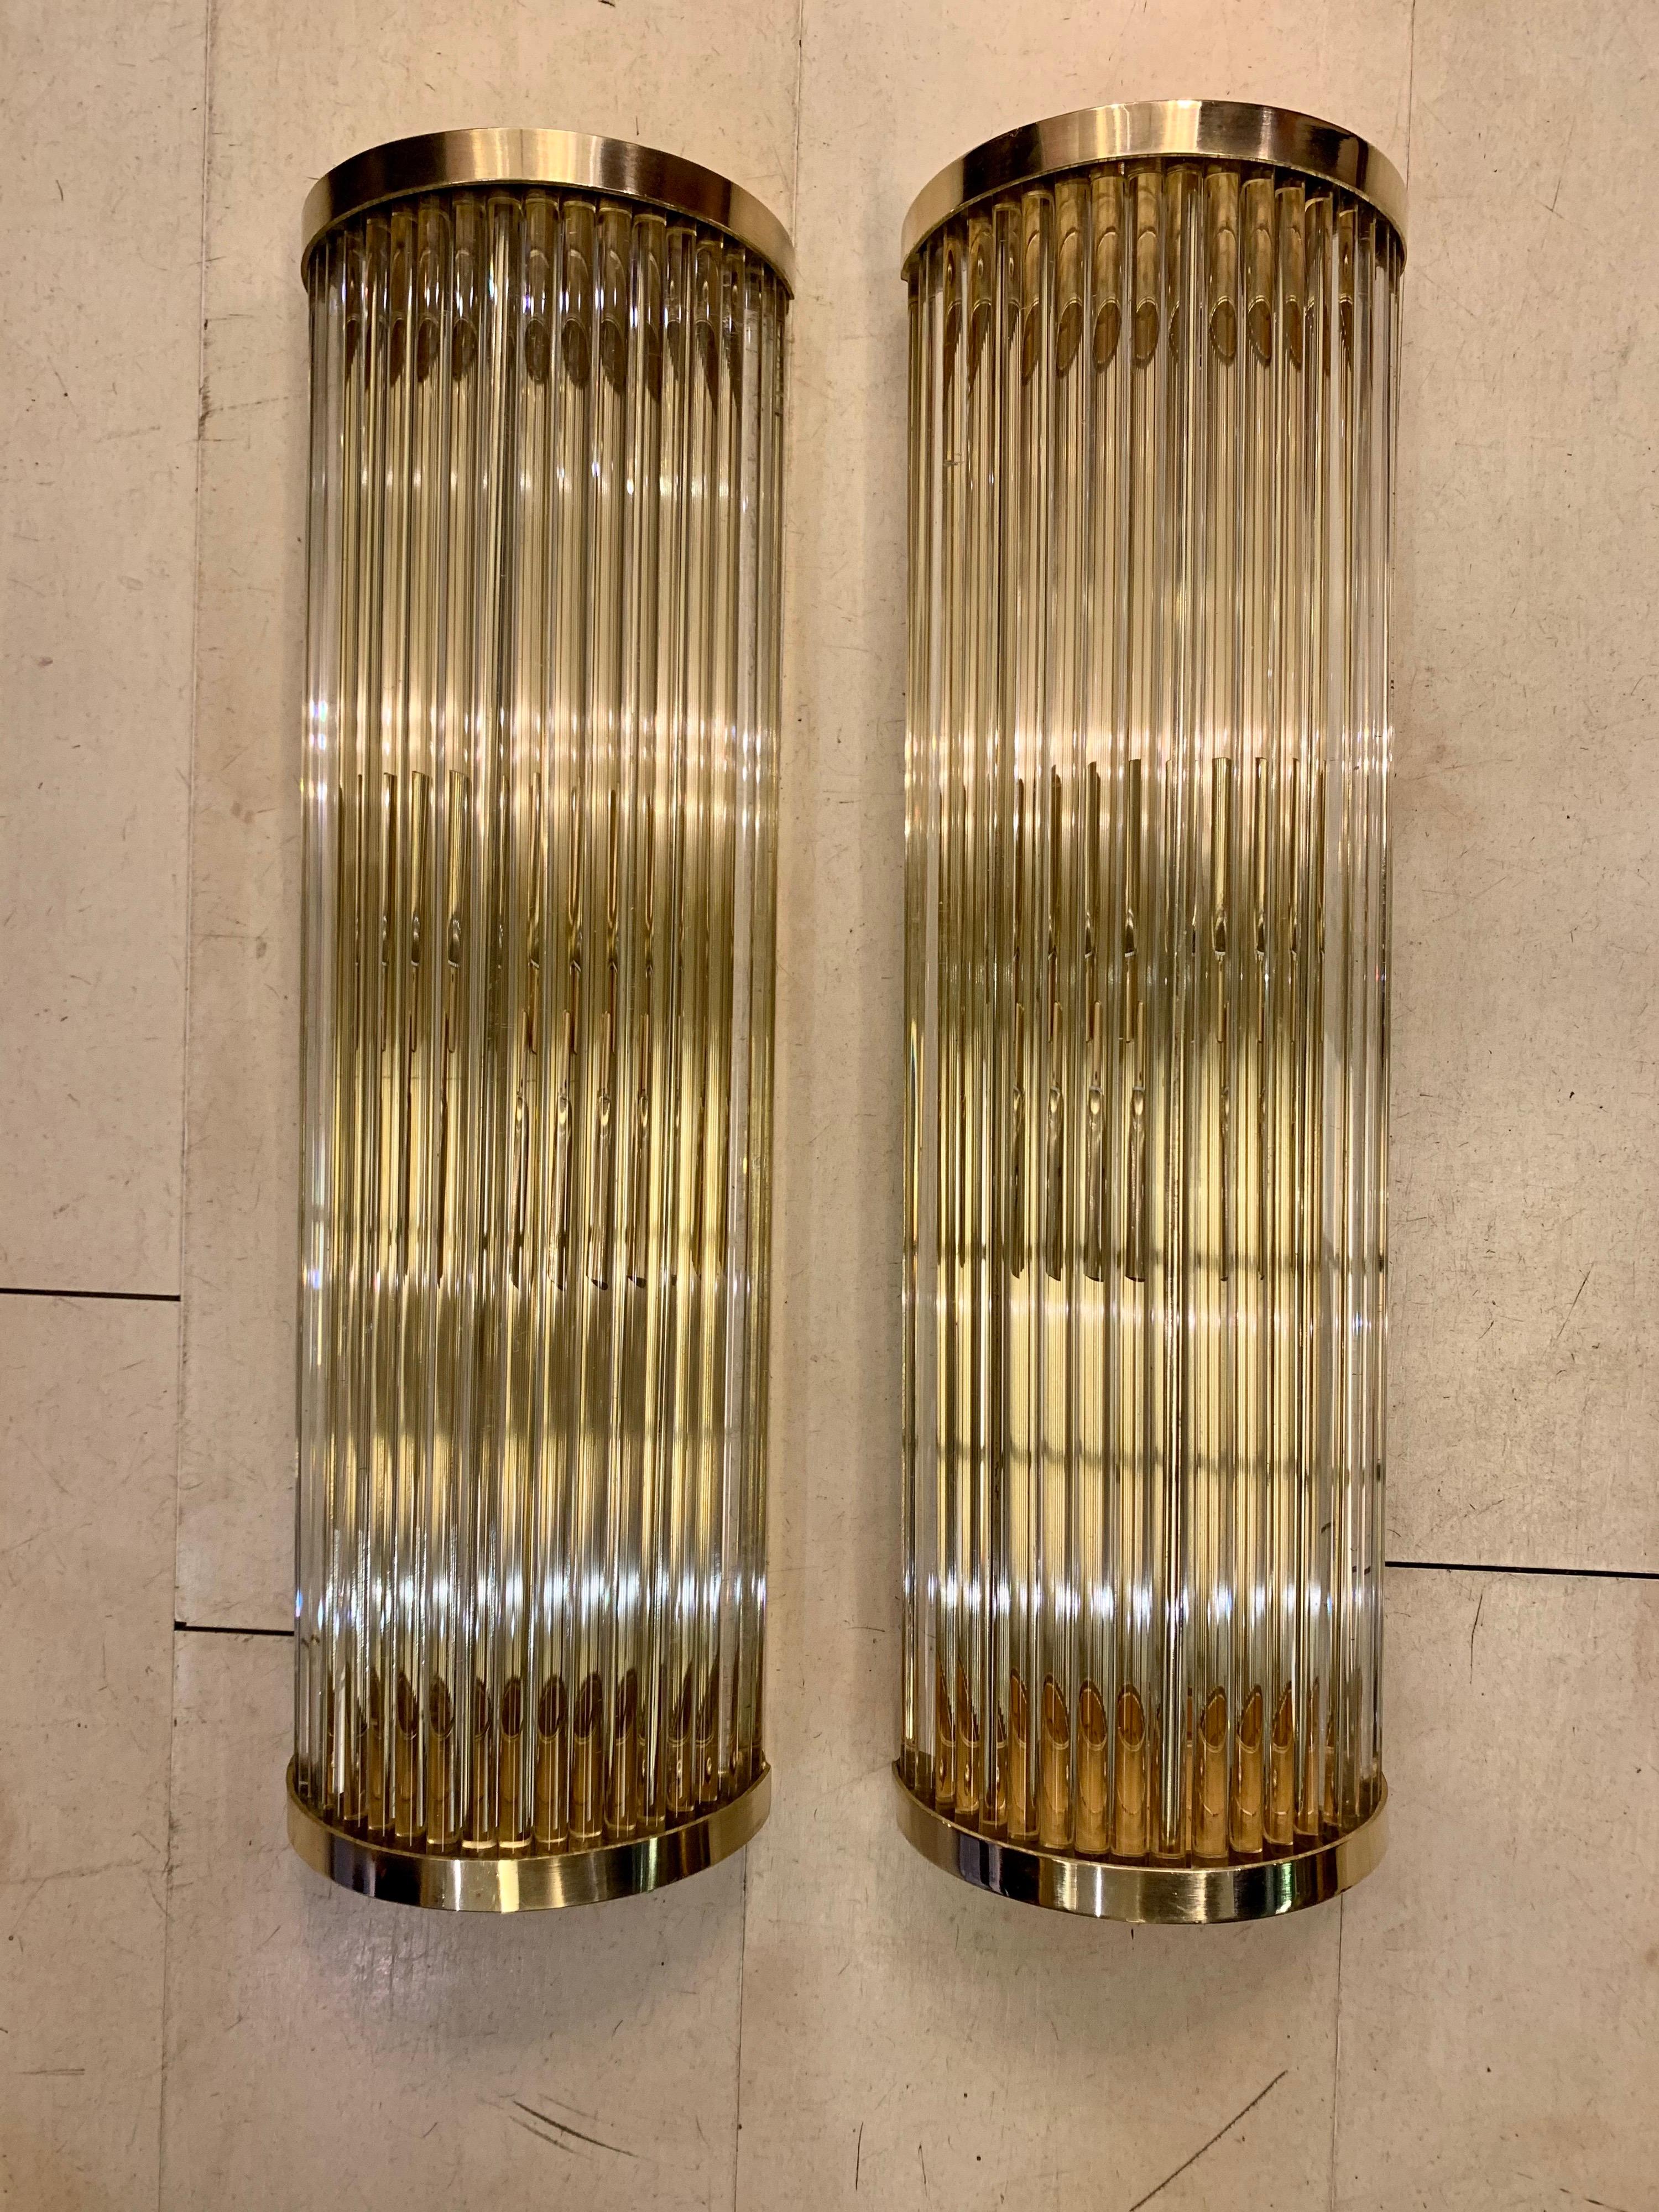 Paar Wandleuchter aus Murano-Klarglas, runde Struktur mit mundgeblasenen transparenten Glaselementen, die den Lichteffekt vervielfachen, Messingstruktur. Sie können sowohl horizontal als auch vertikal angebracht werden, zwei Glühbirnen pro Leuchte,